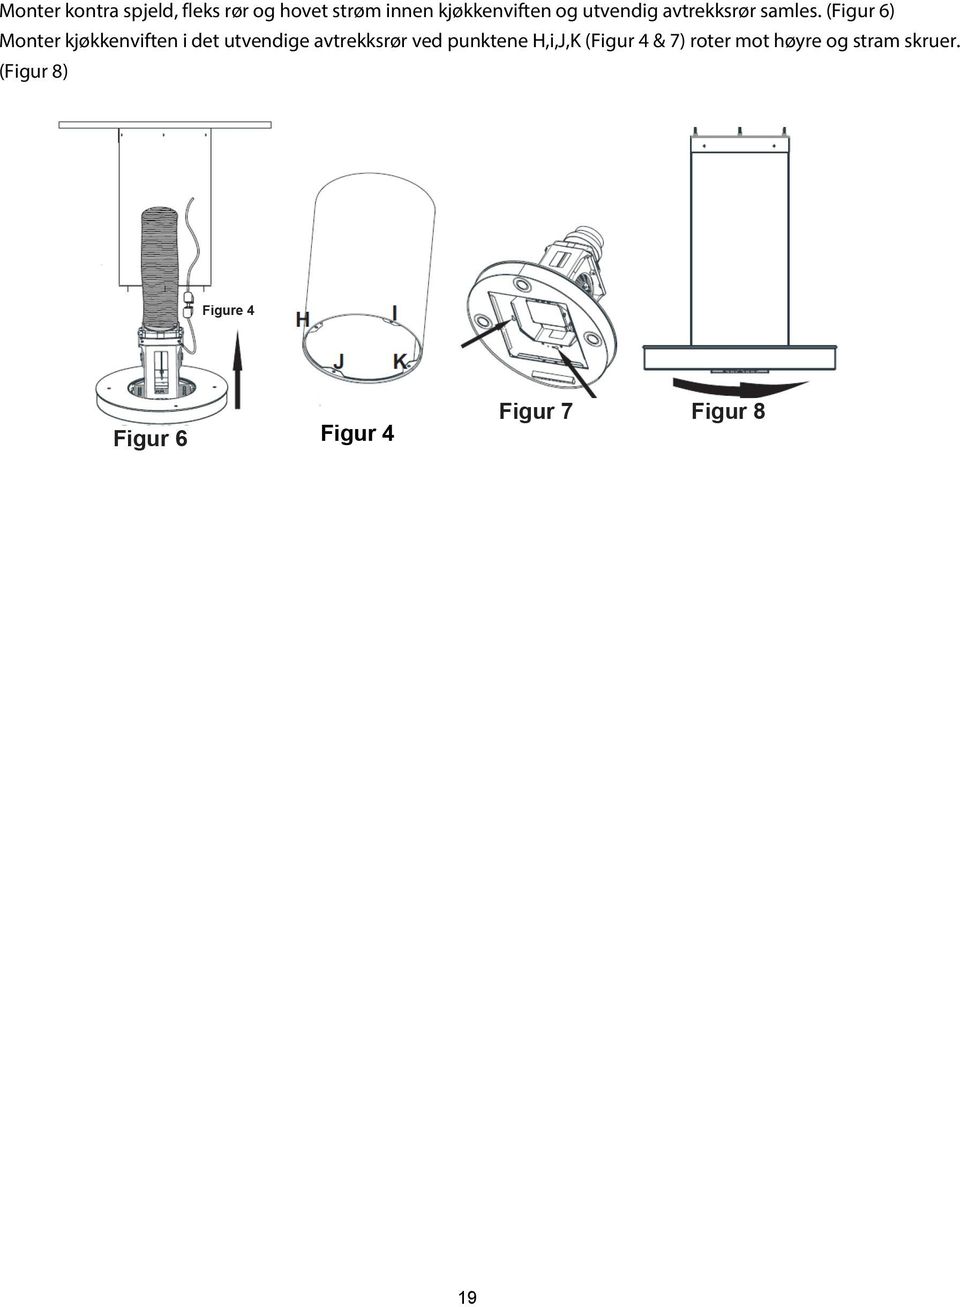 (Figur 6) Monter kjøkkenviften i det utvendige avtrekksrør